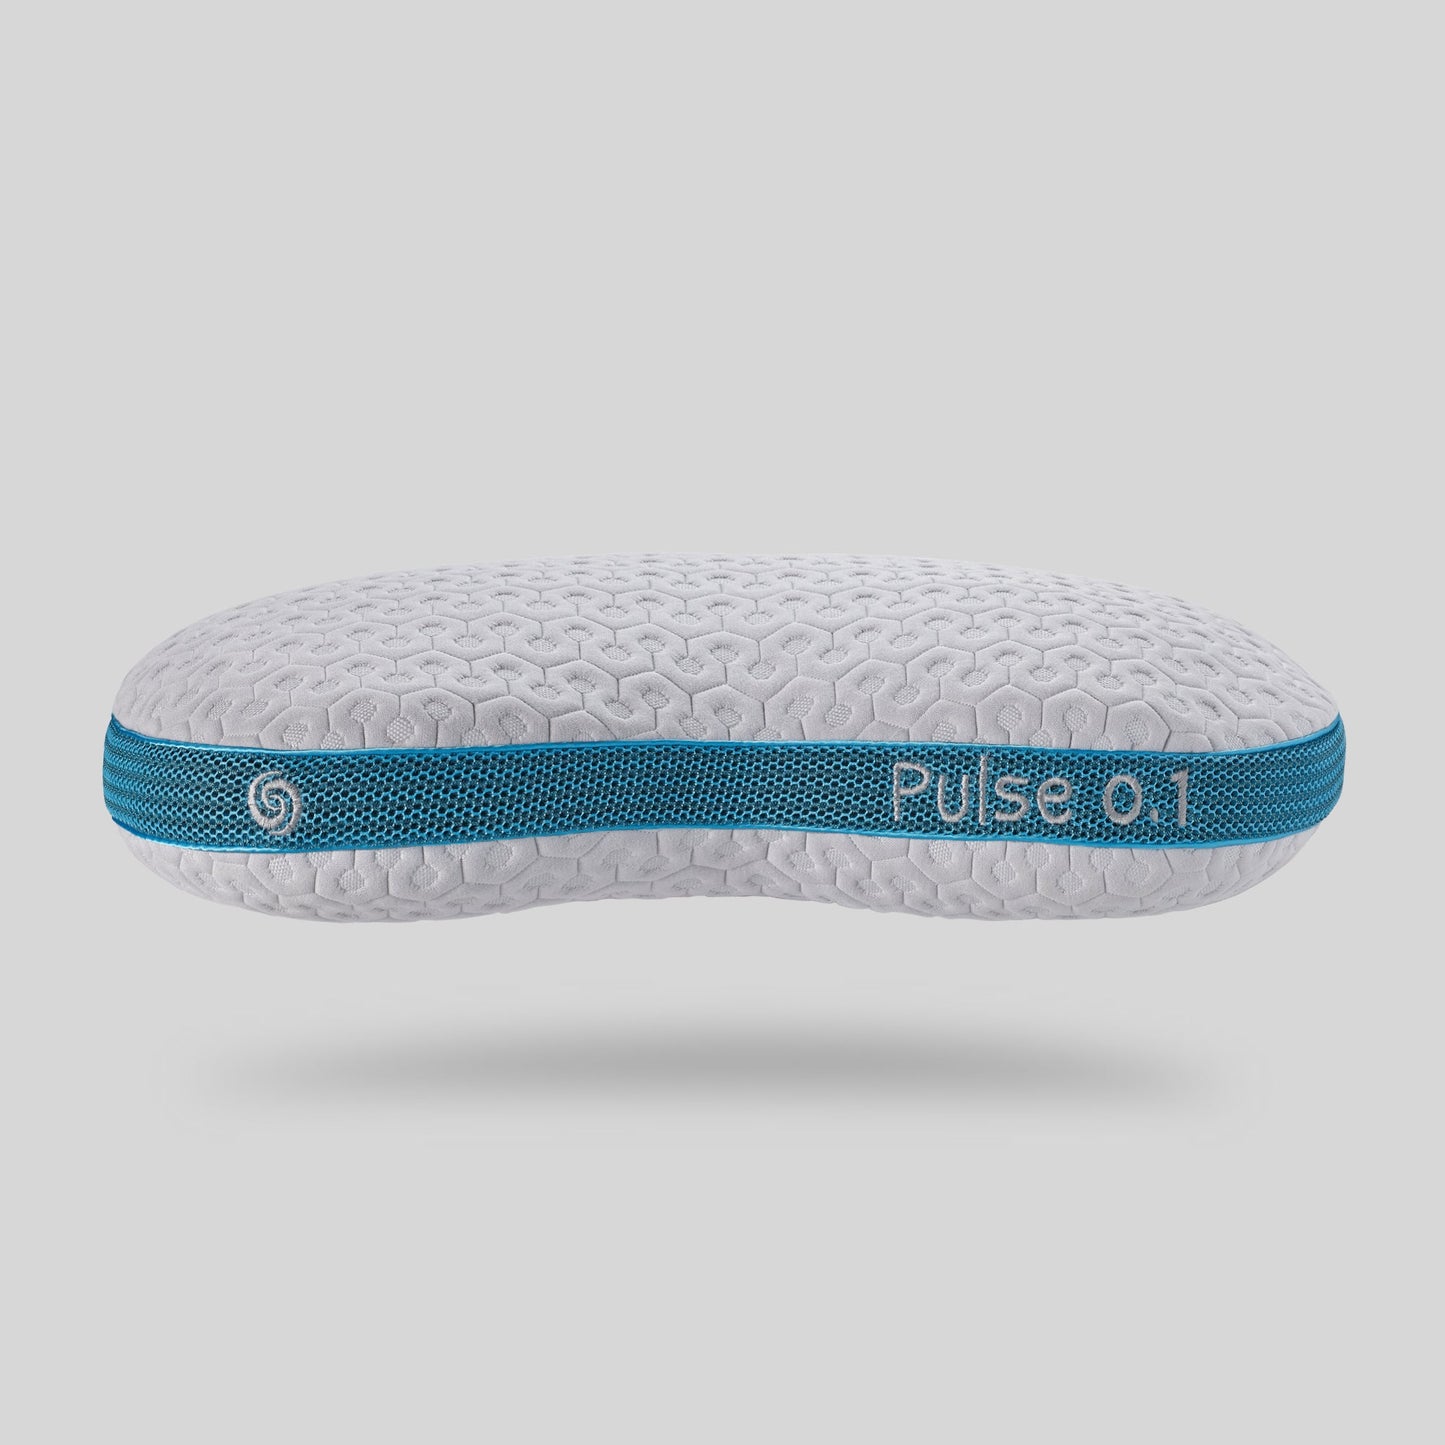 Bedgear Pulse Performance Pillow 0.1